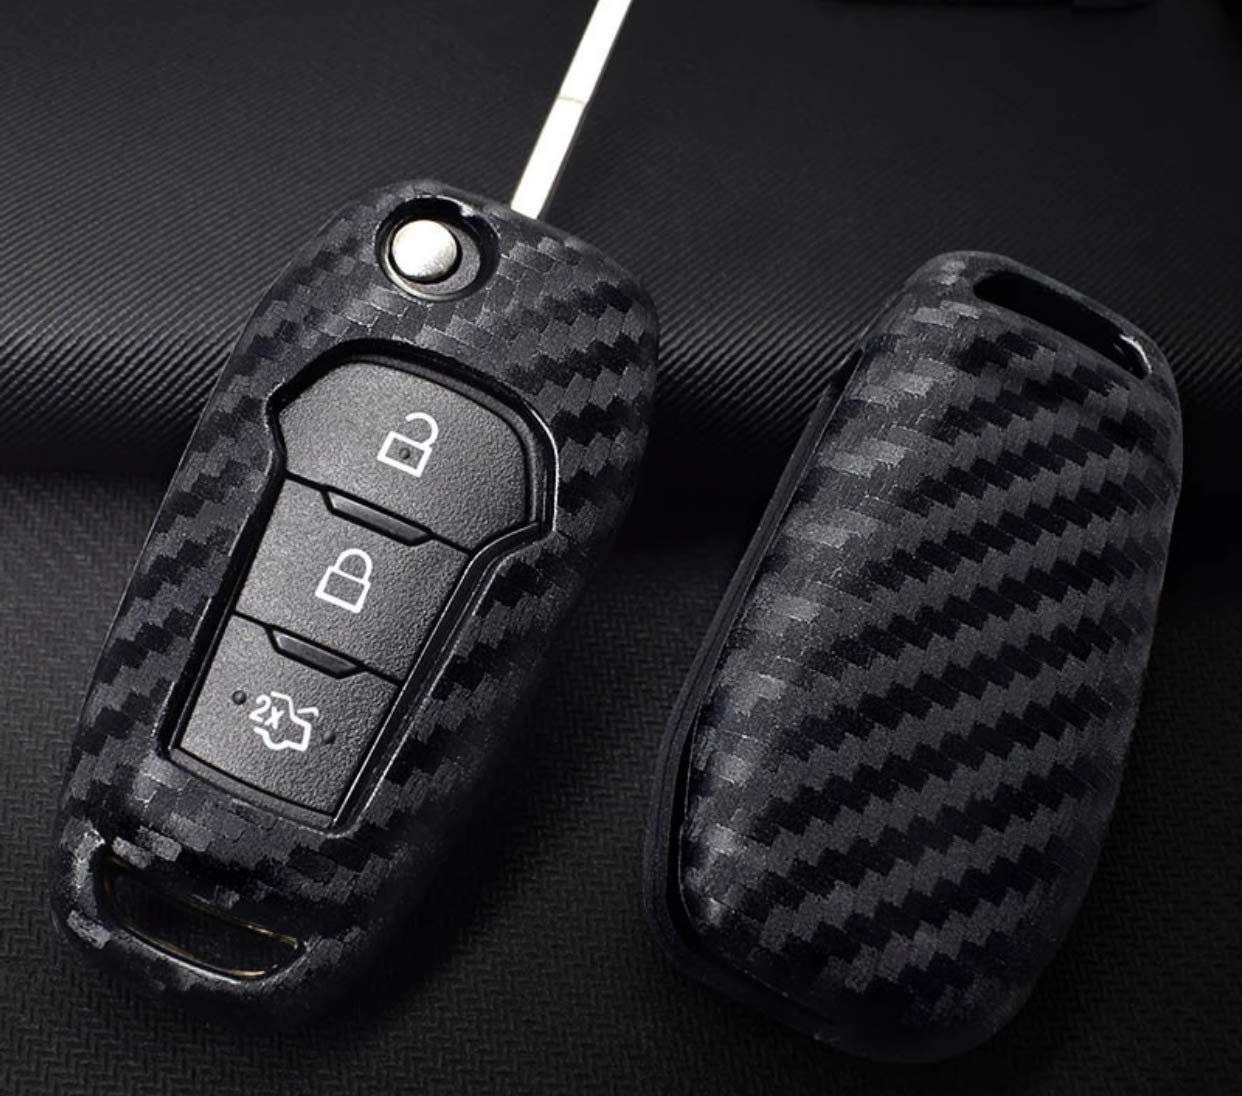 FZZ Parts Schlüssel Gummi Cover Schlüsselhülle Carbon Optik Passend für Fiesta Focus C-Max S-Max Kuga Edge von FFZ Parts